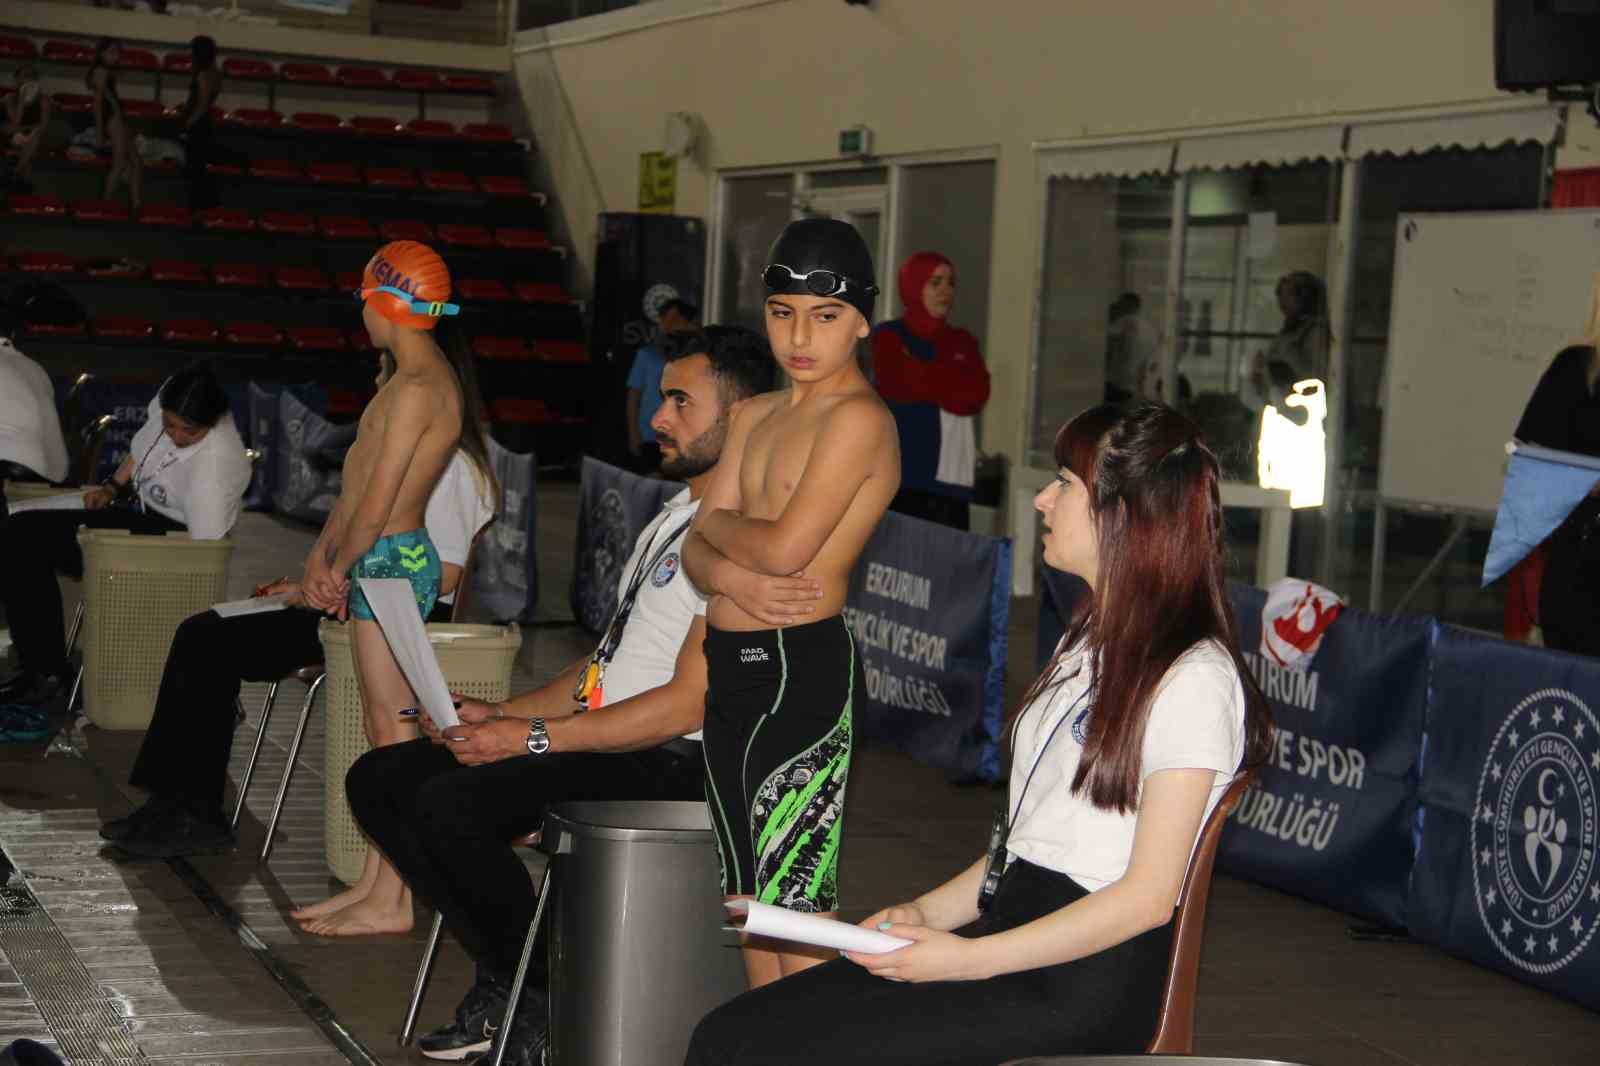 Minik yüzücüler madalya için yarıştı